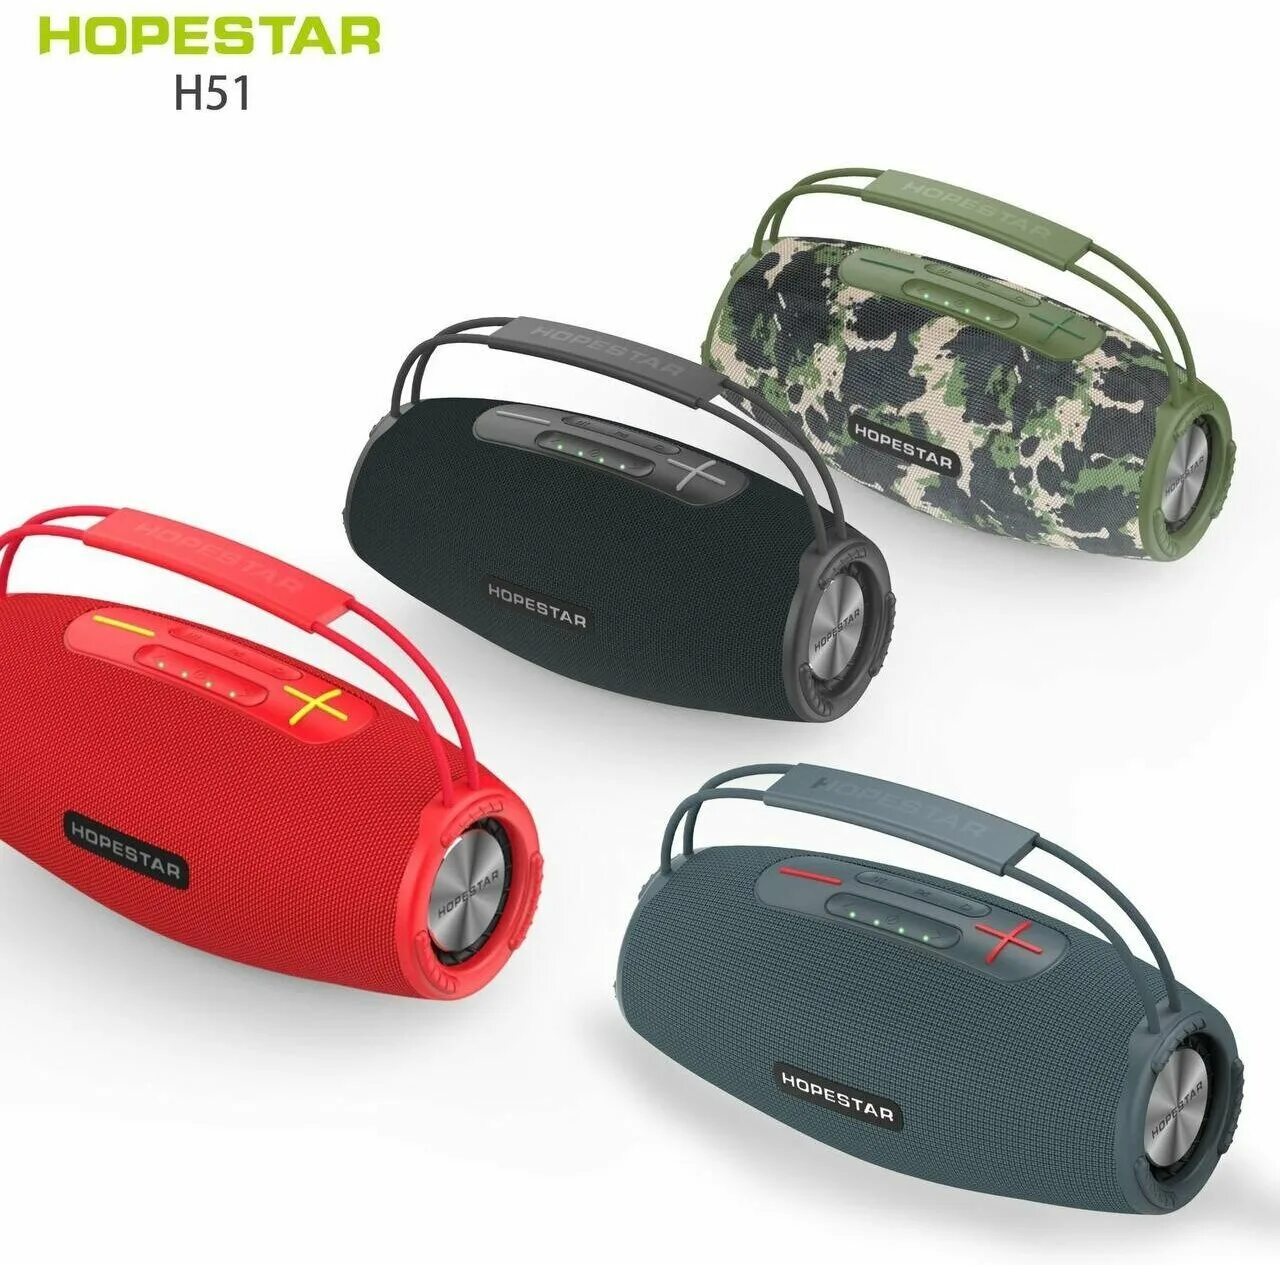 Hopestar h50. Колонка HOPESTAR h51. Портативная колонка HOPESTAR h51 (черный). HOPESTAR model h51 Speaker. HOPESTAR model h51 Speaker Board.